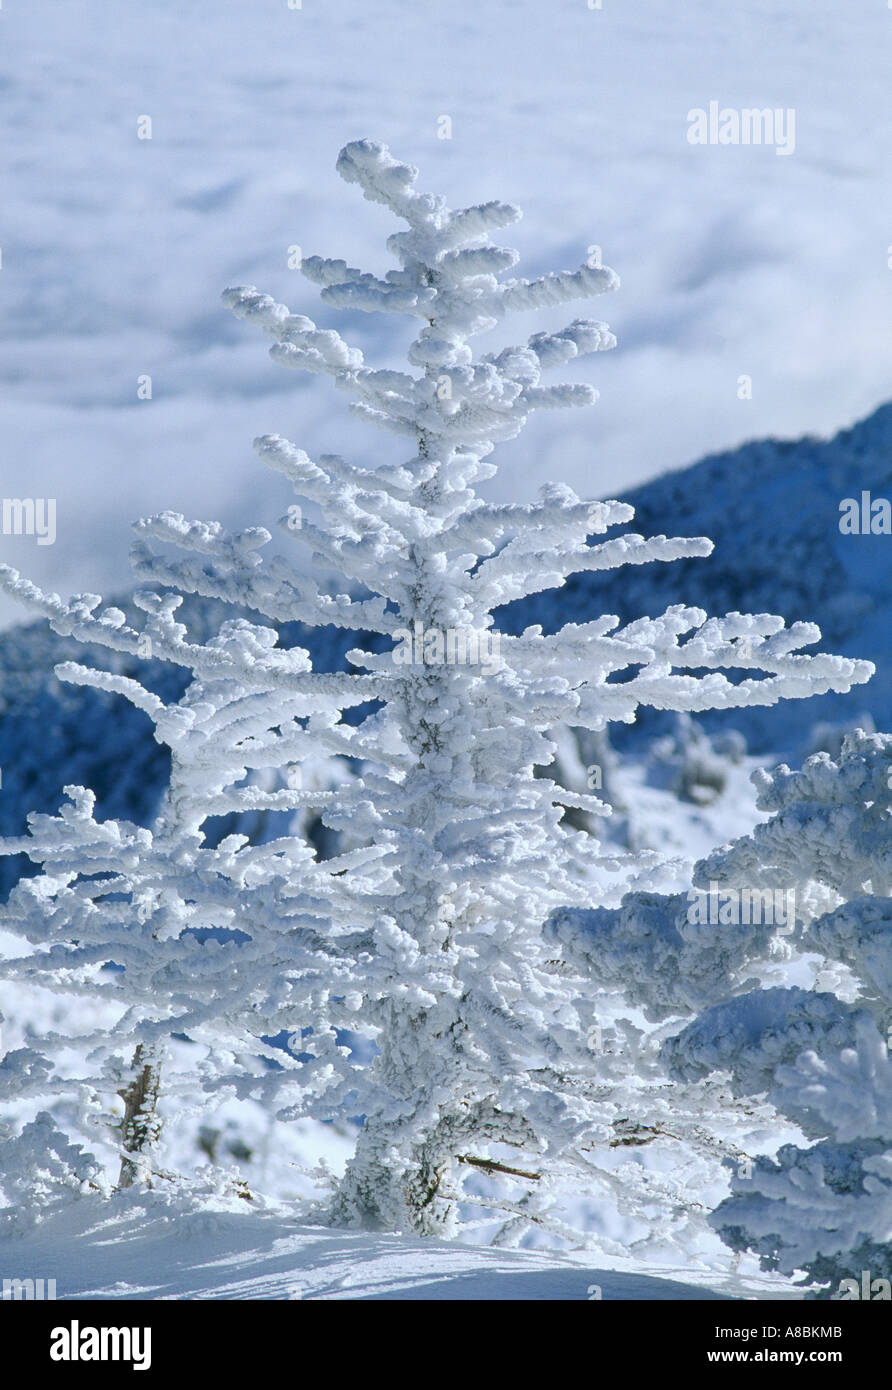 Jeju Island scena di neve del Monte Halla inverno Foto Stock